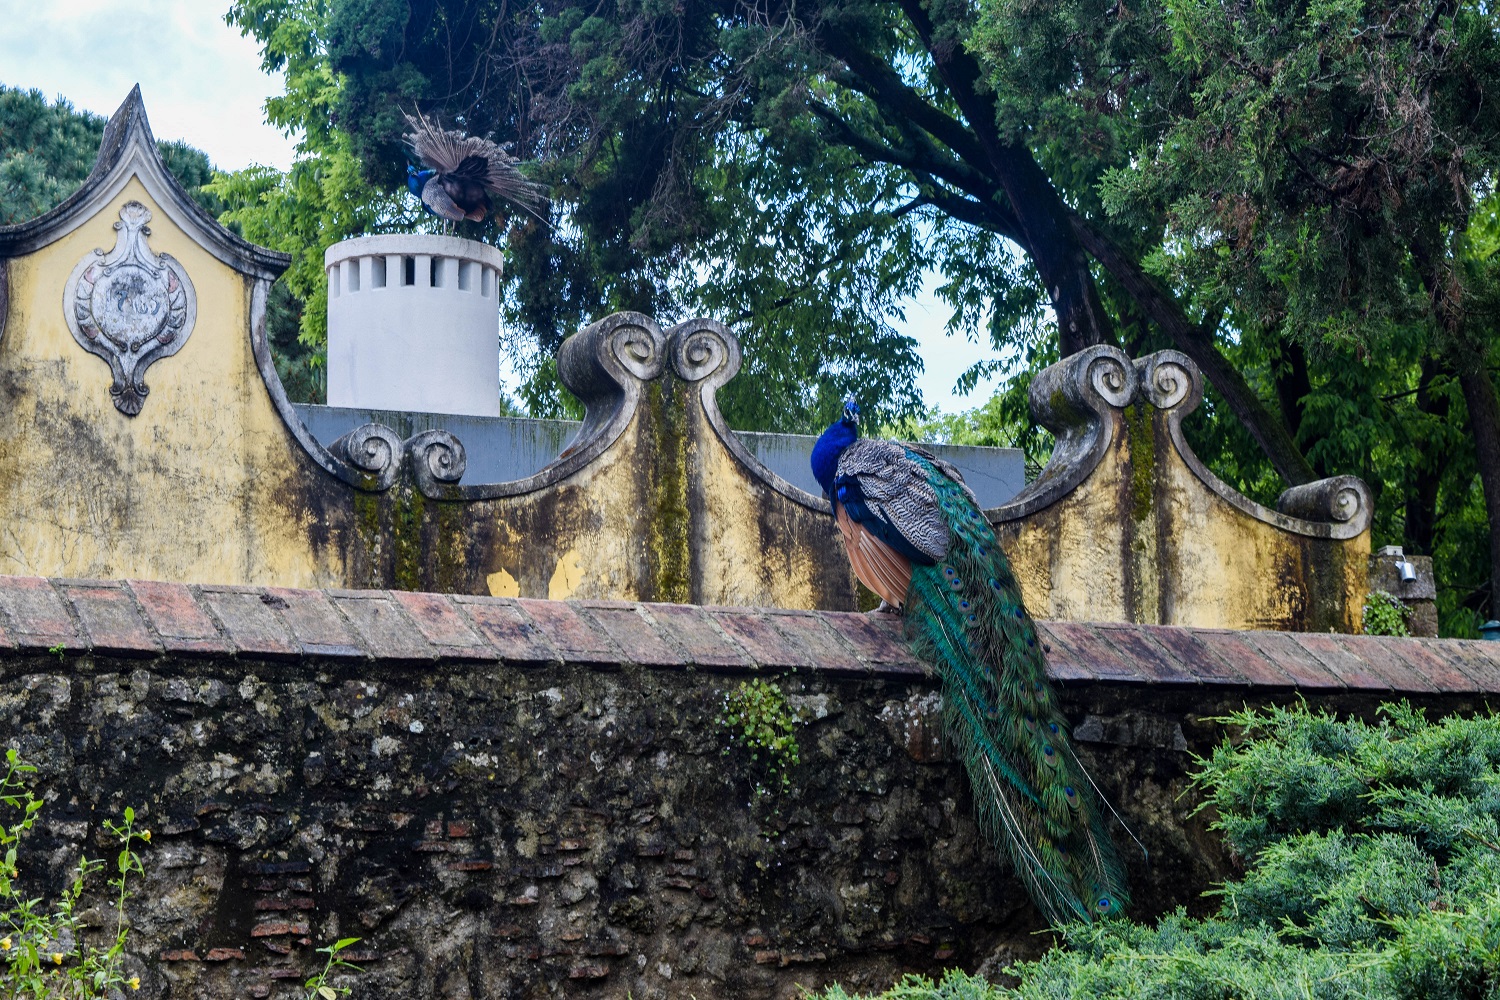 Castelo de Sao Jorge Peacock